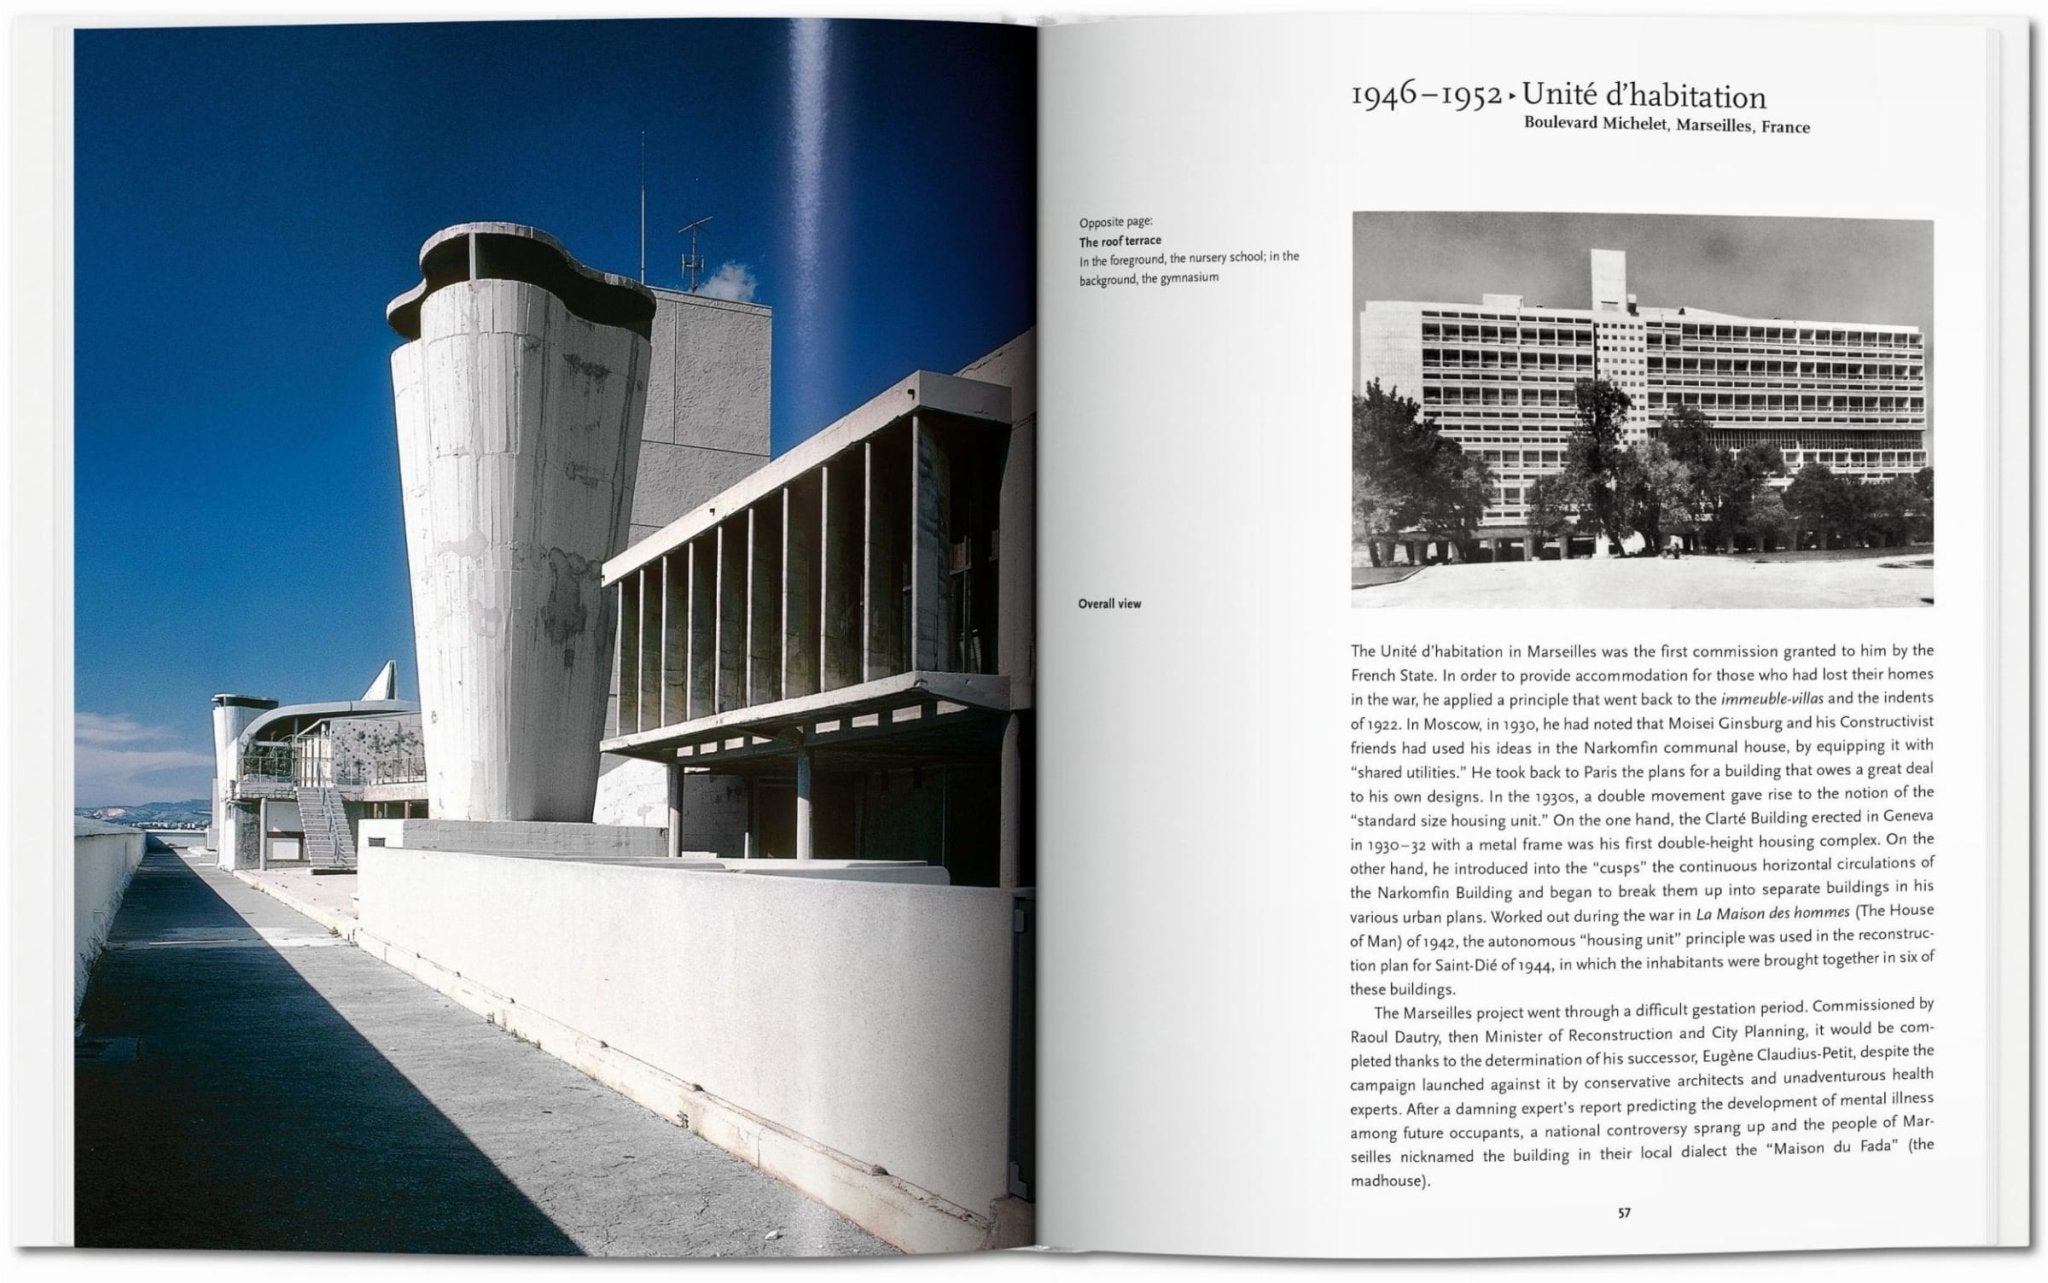 Le Corbusier non-fiction books from Taschen Verlag